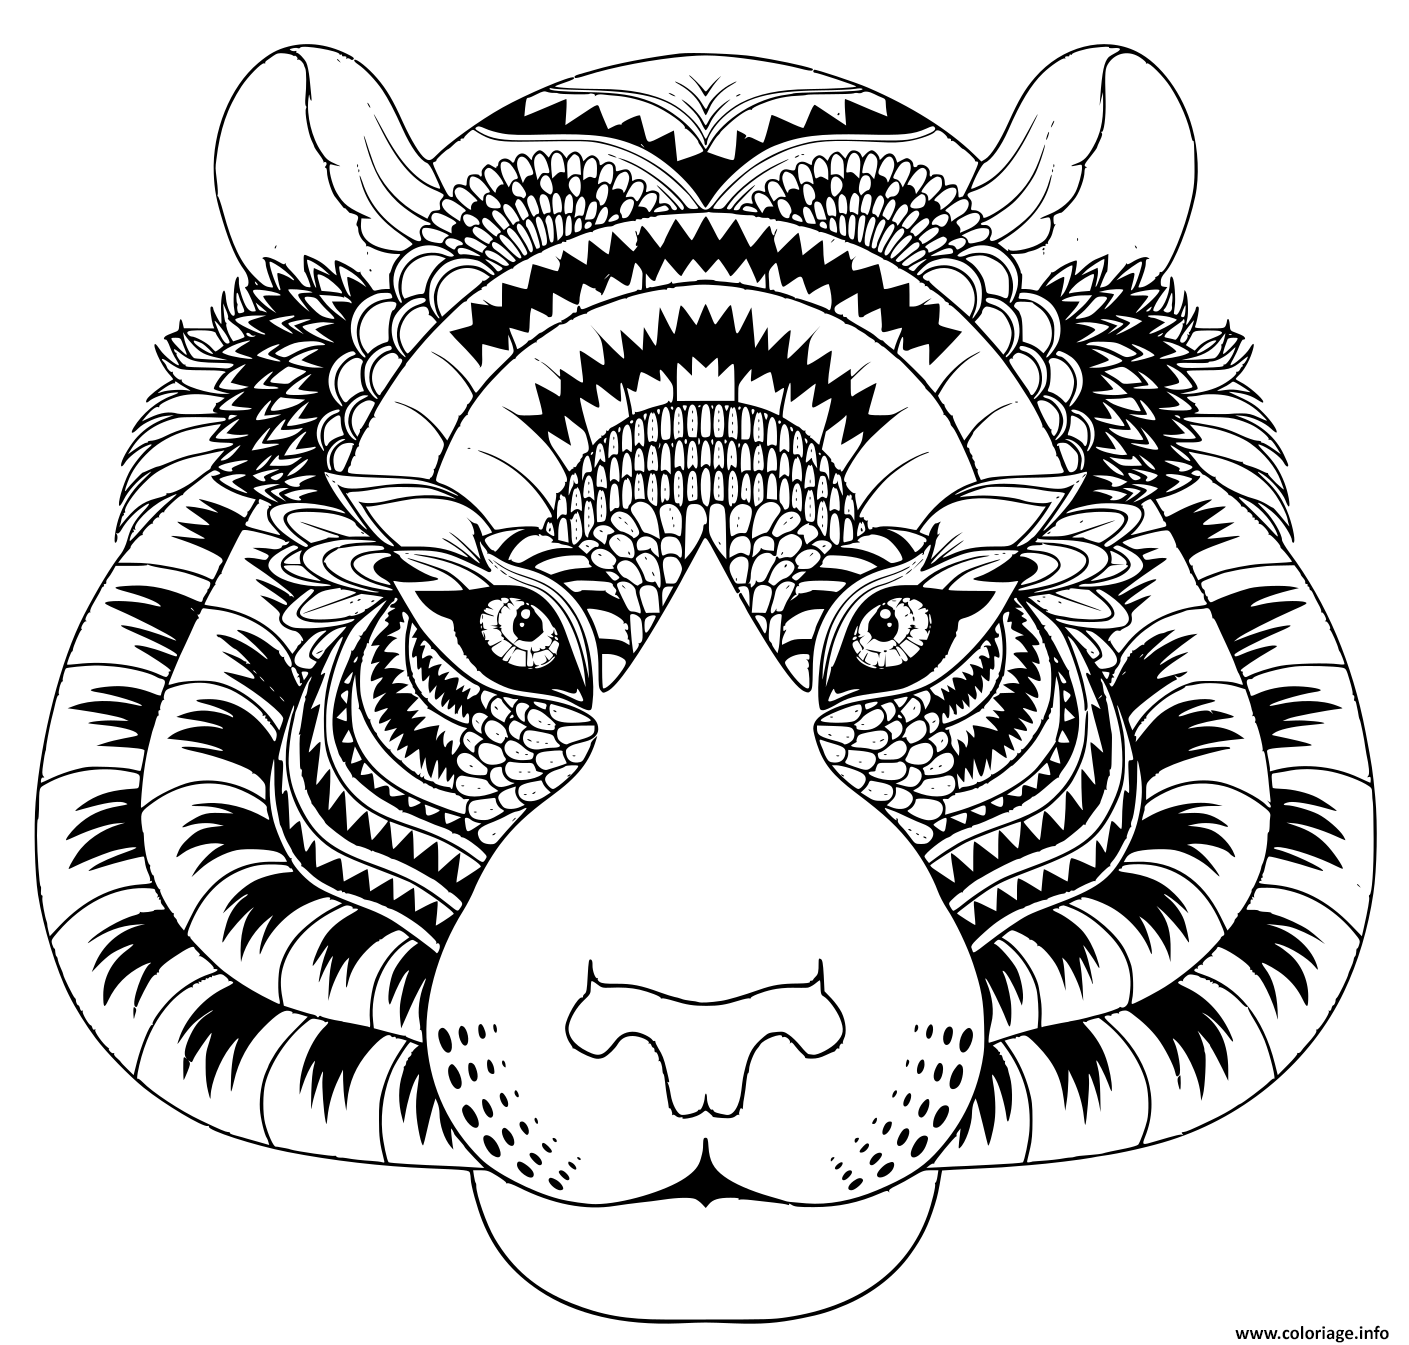 Dessin tete de tigre avec details zentangle Coloriage Gratuit à Imprimer